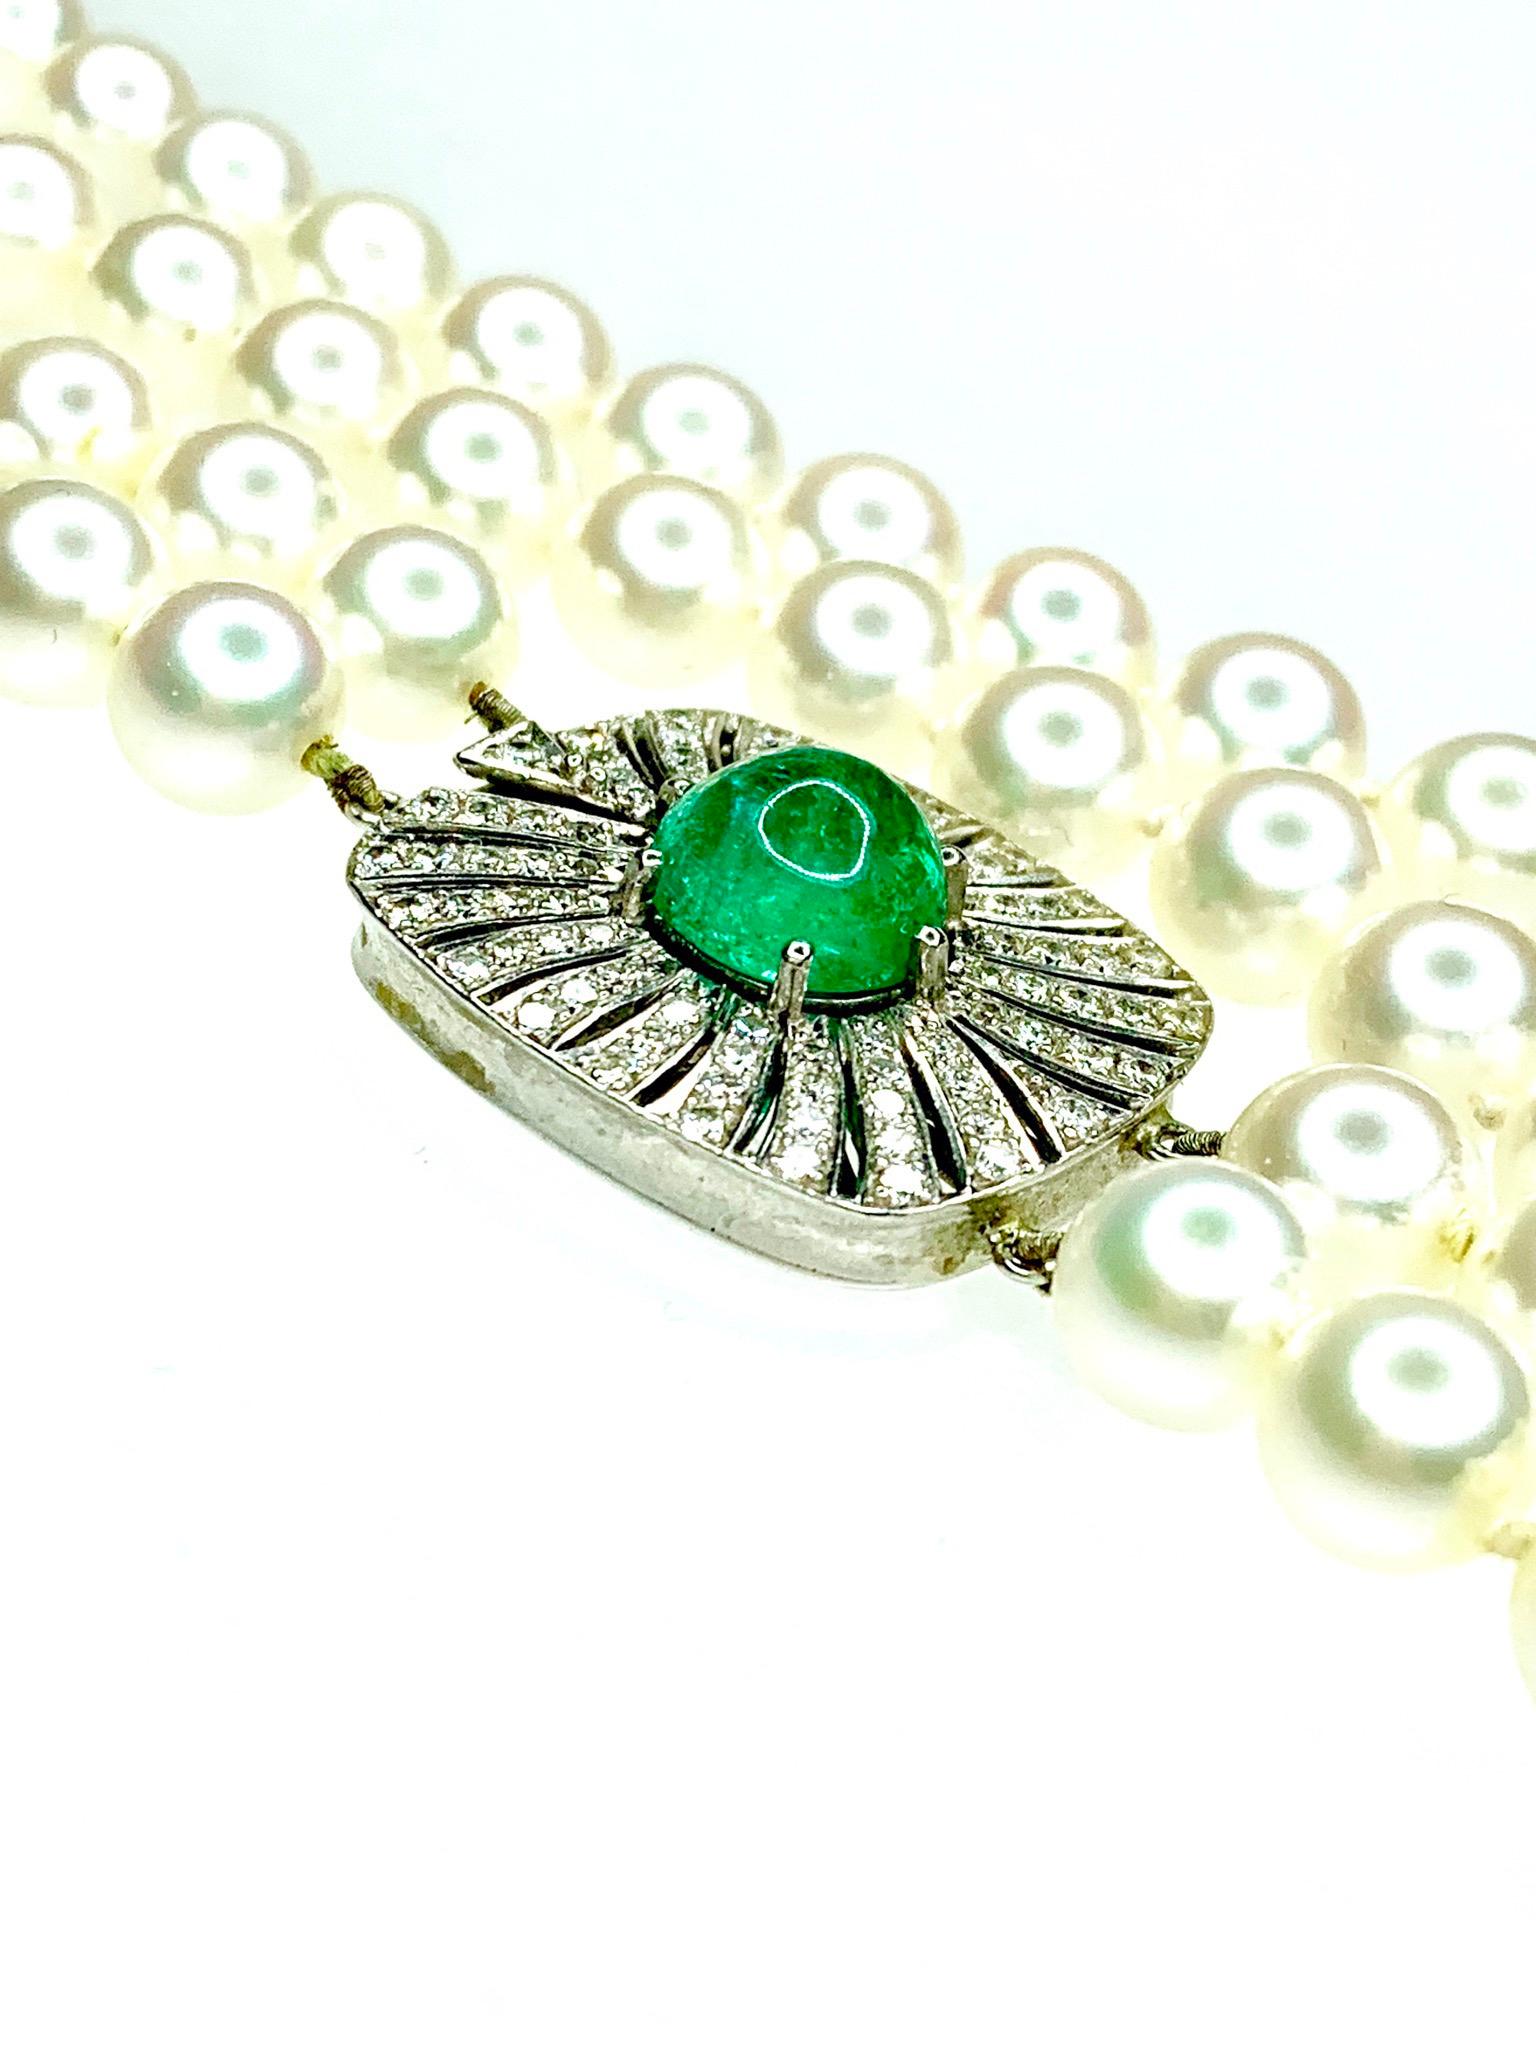 Cabochon Emerald Diamond & Cultured Pearl Necklace. 